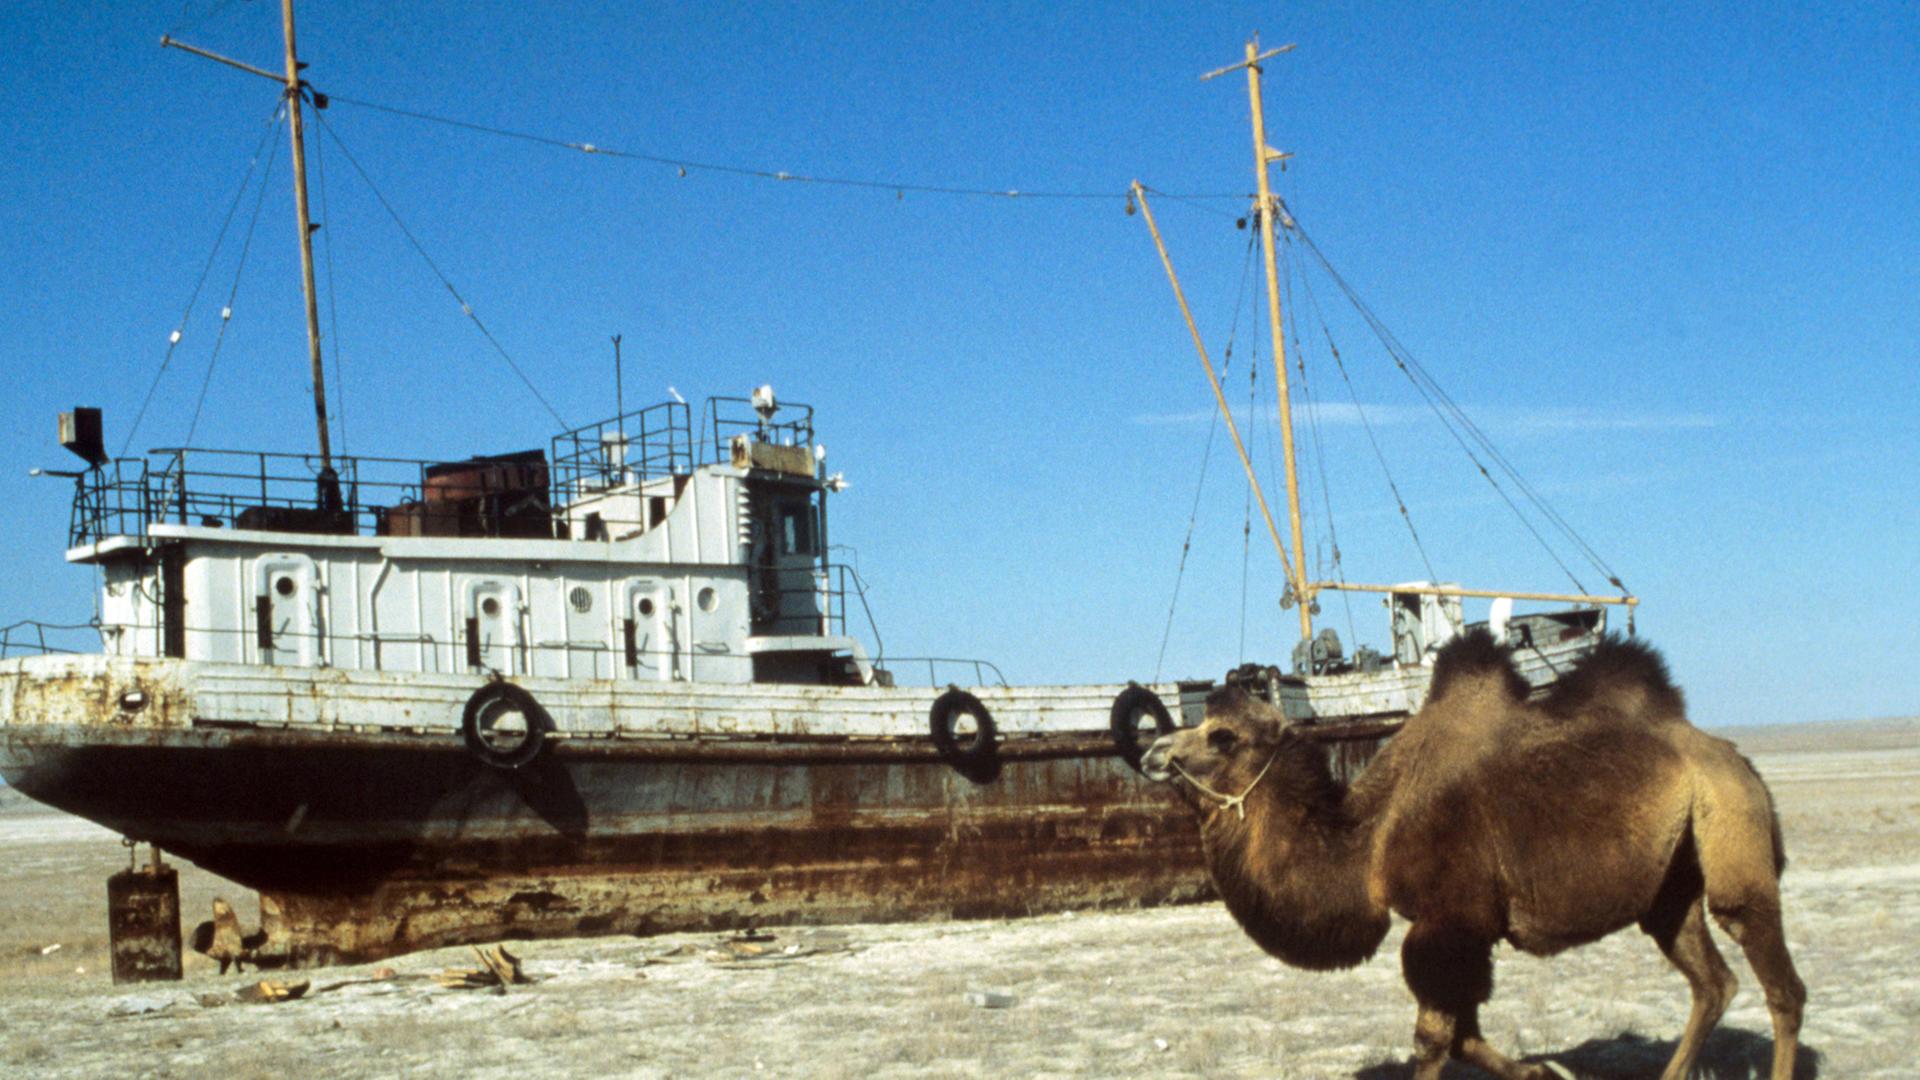 Ein Schiff auf dem Trockenen, aufgenommen 1989. Im Vordergrund ein Kamel. Auf Grund extremer Wasserentnahme in den vergangenen Jahren zur Bewässerung von Baumwollplantagen in Usbekistan und Kasachstan versandet der einst viertgrößte See der Welt stetig.